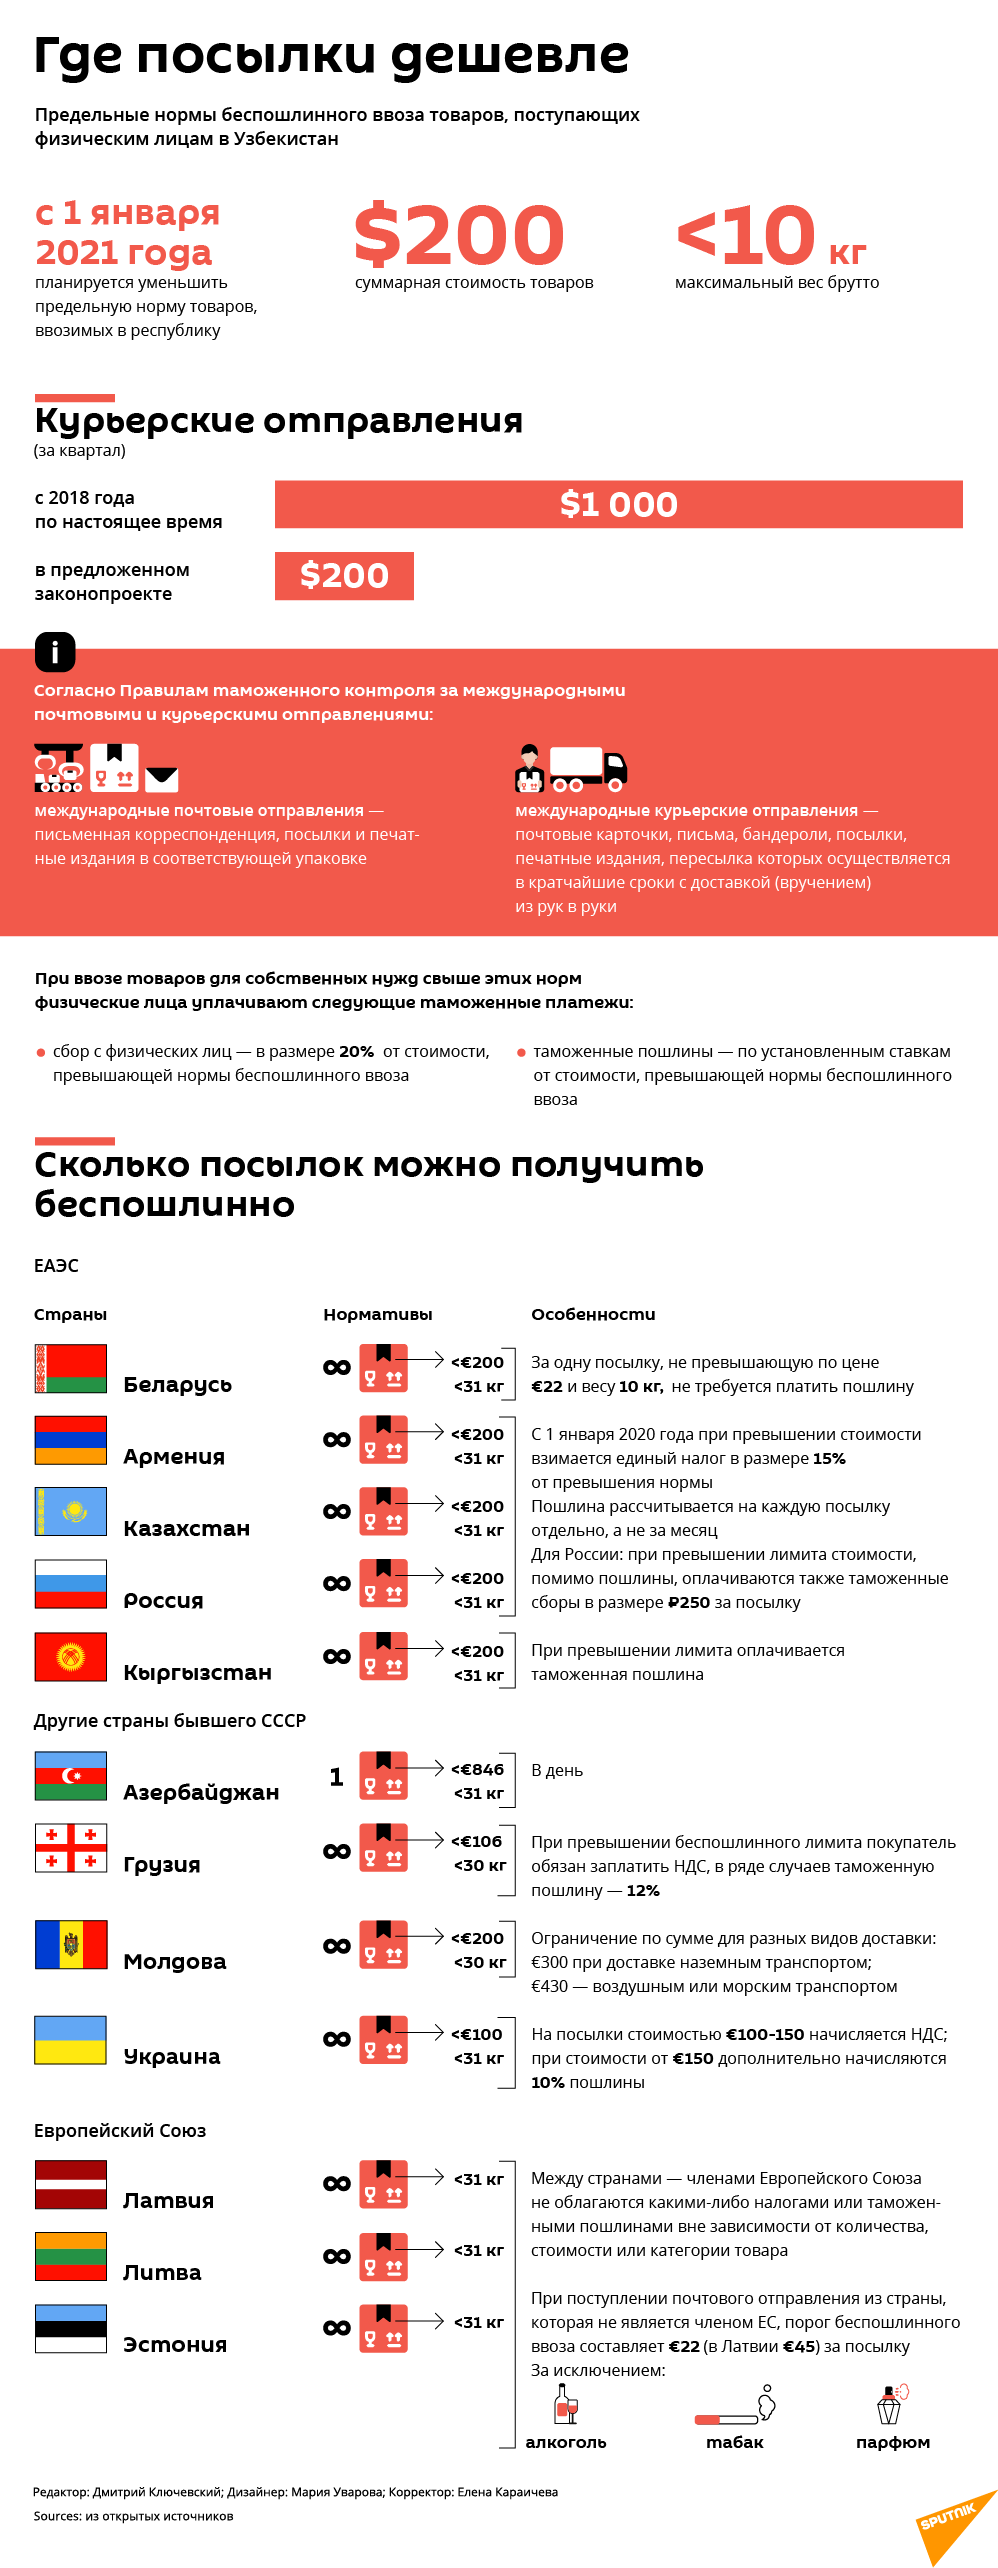 Тарифы на посылки в Грузии и других странах - Sputnik Грузия